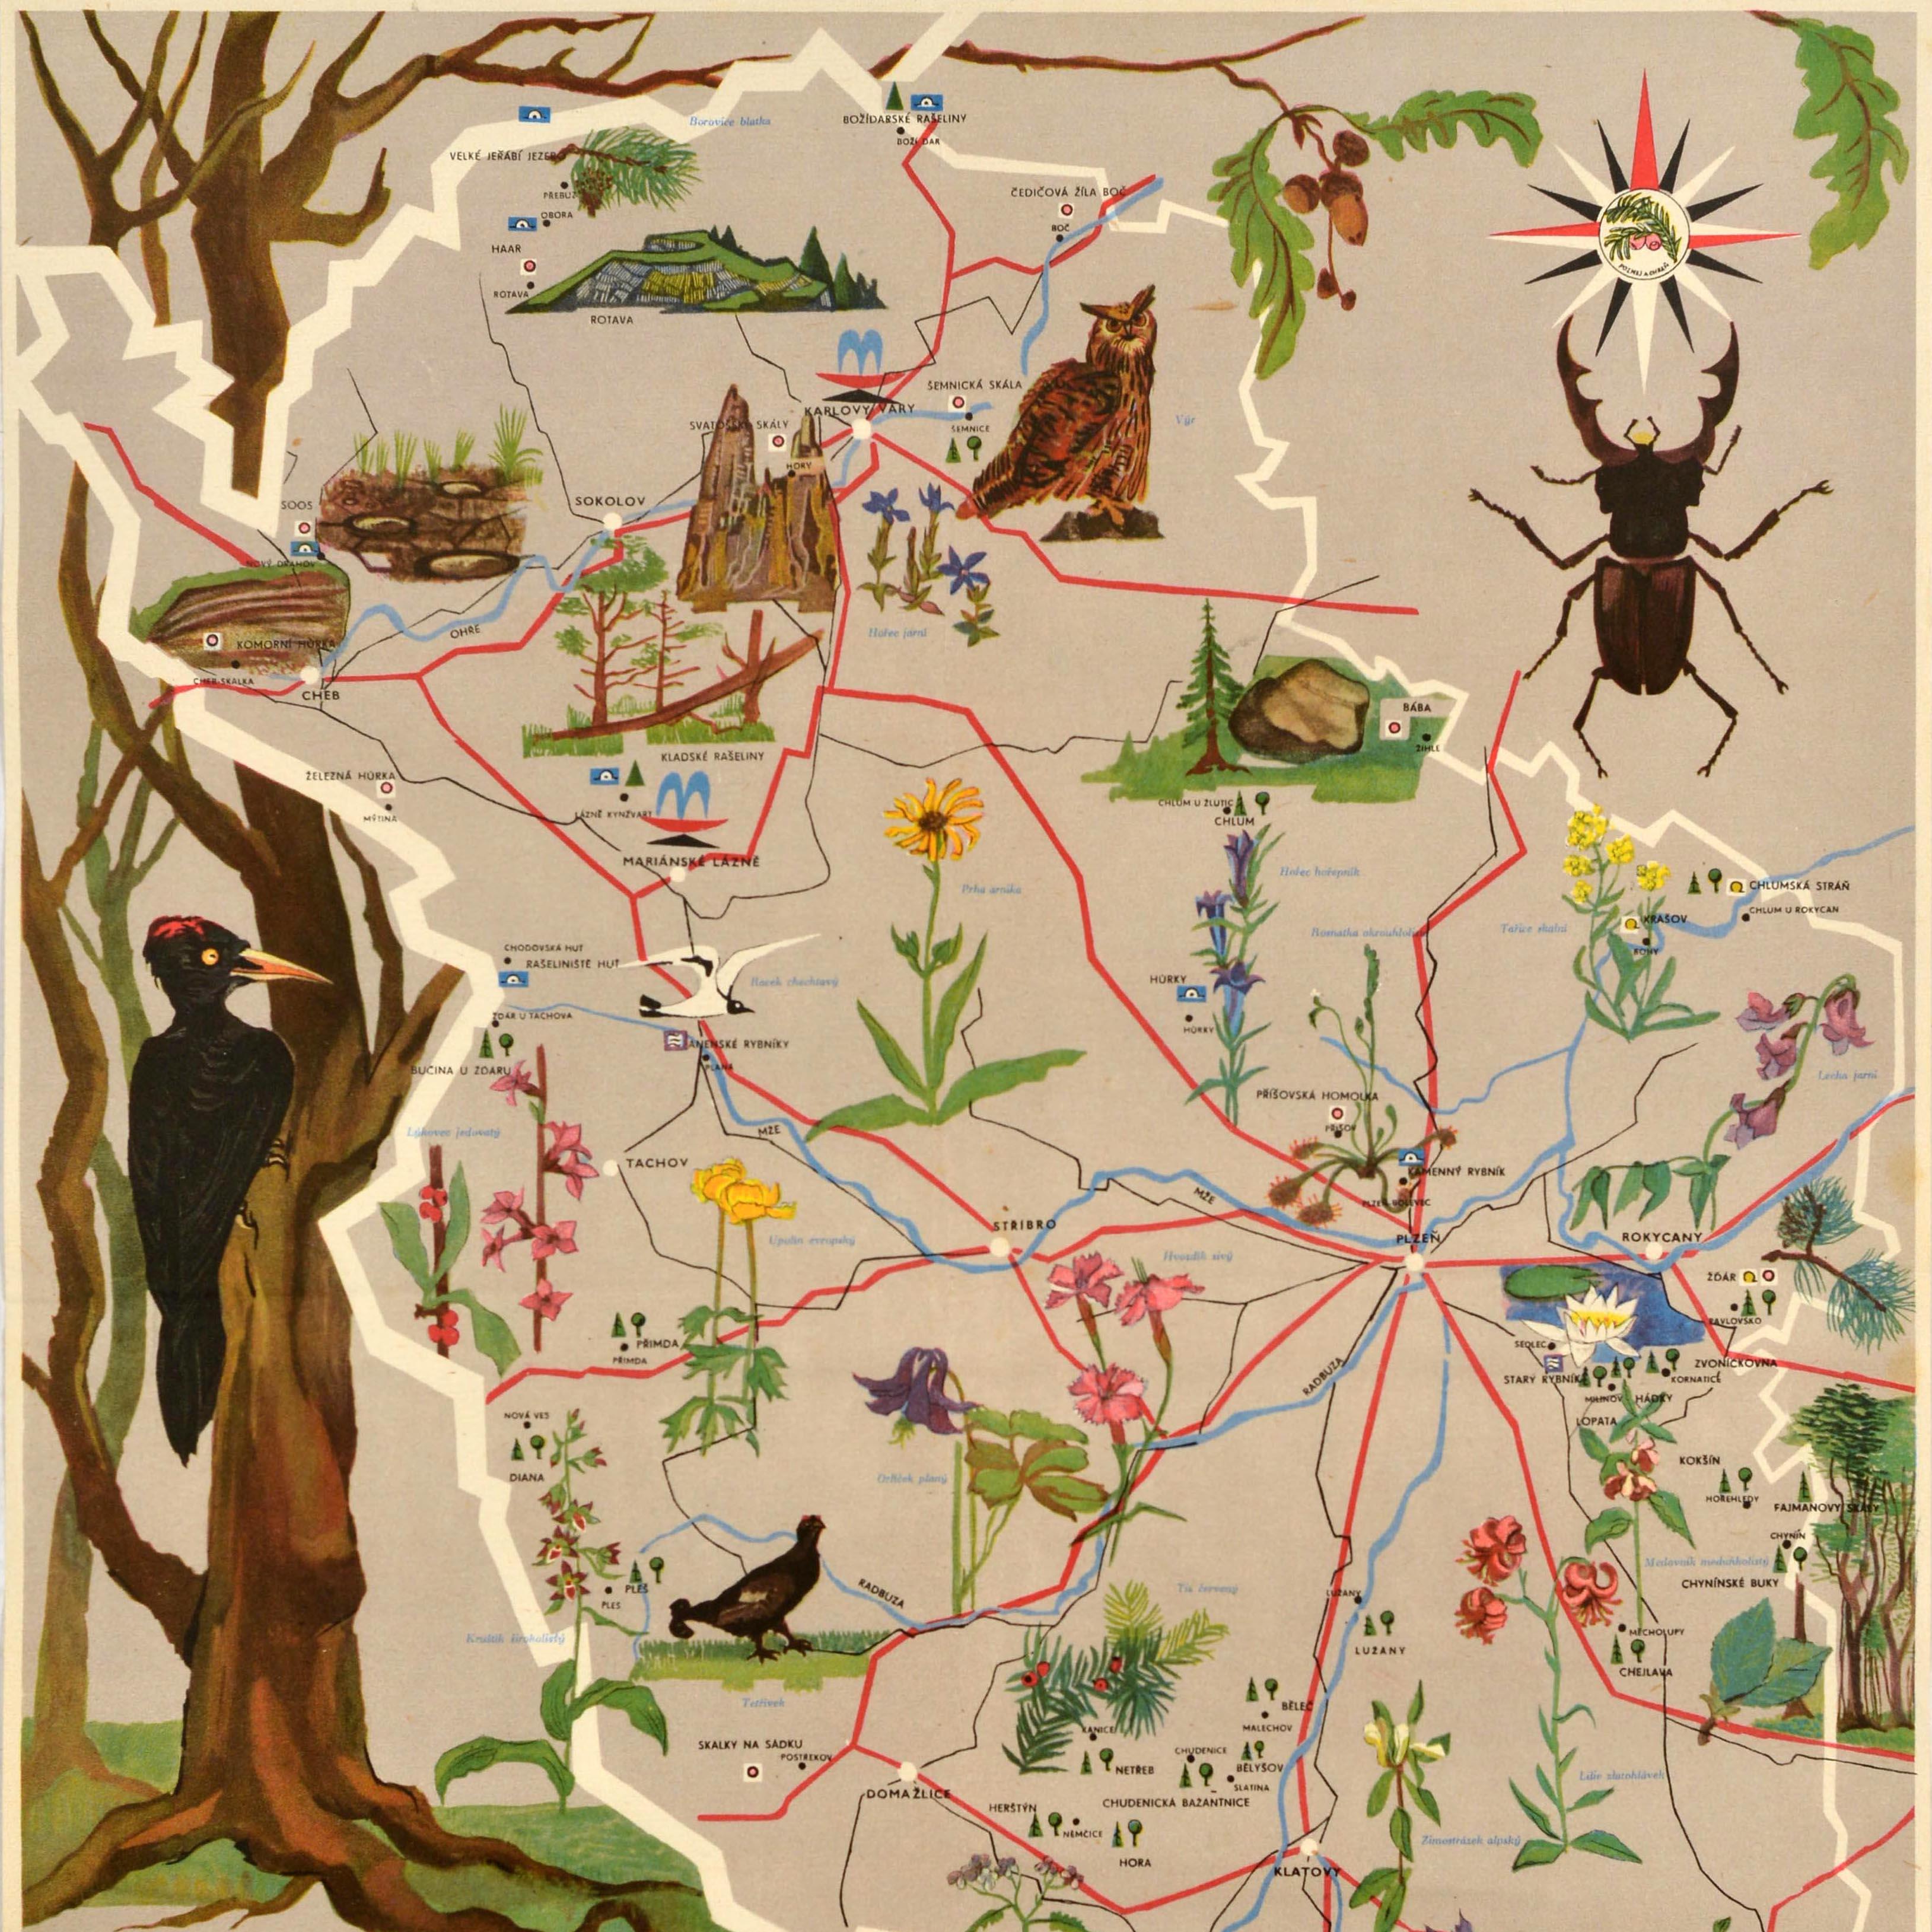 Affiche de voyage vintage originale pour la Réserve naturelle de la région de Bohême occidentale / Zapadocesky Kraj Prirodni Rezervace comprenant une carte illustrée de la région montrant diverses espèces de flore et de faune, y compris différents